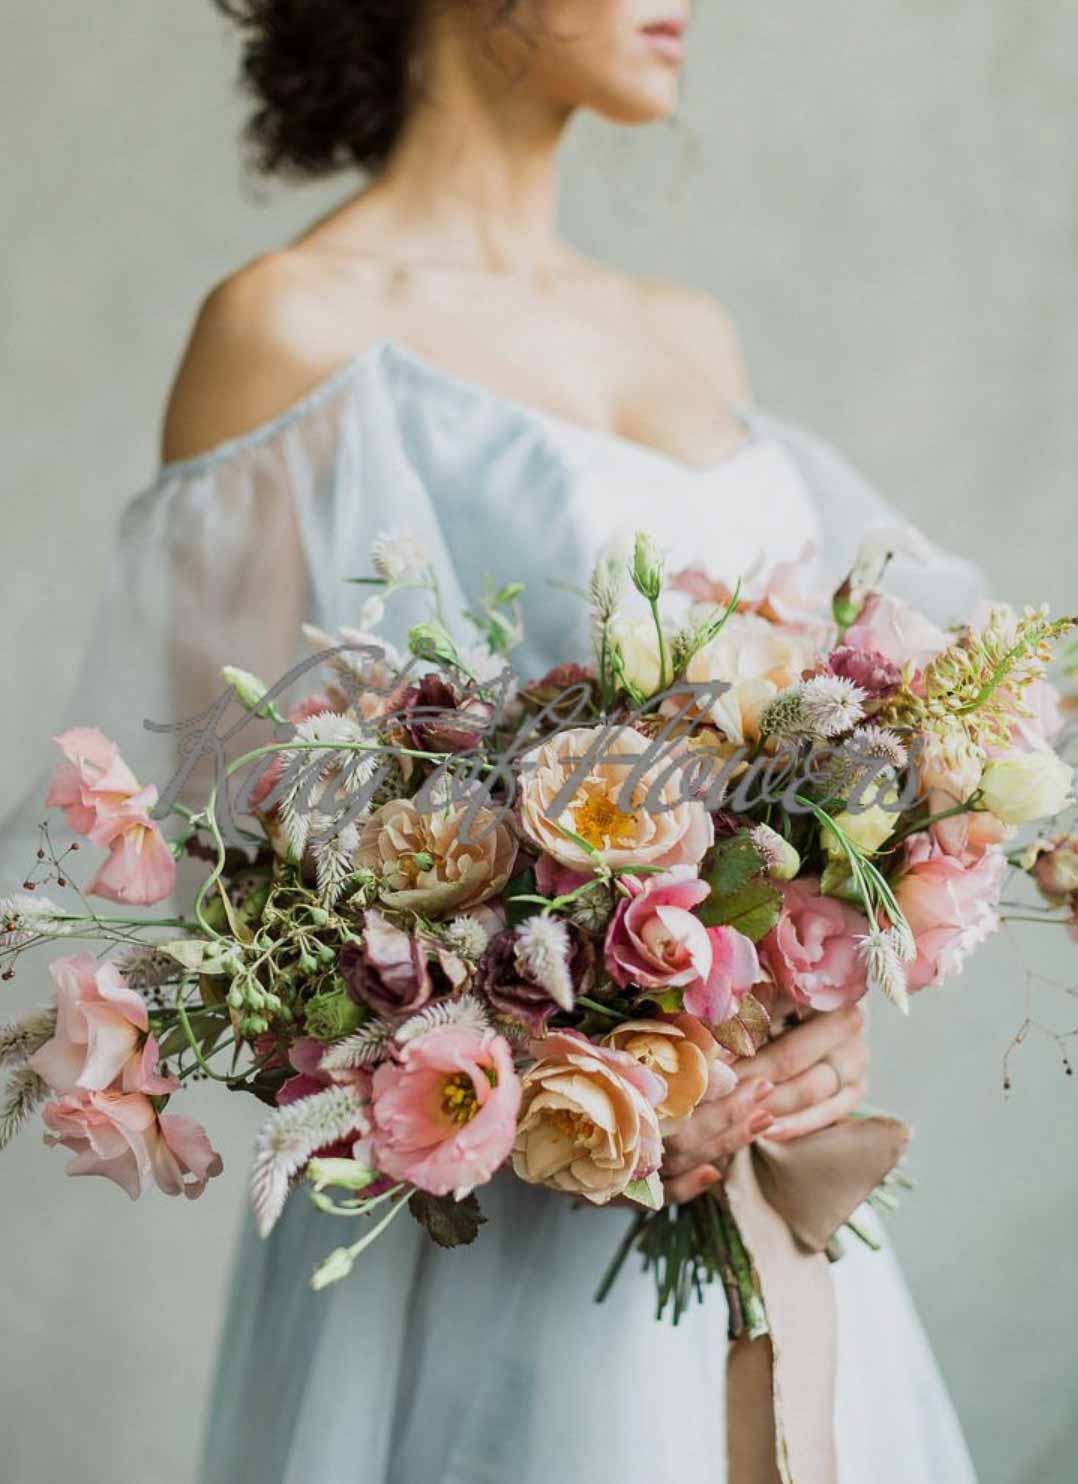 Букет невесты из поновидных роз, эустомы, латируса под ленту